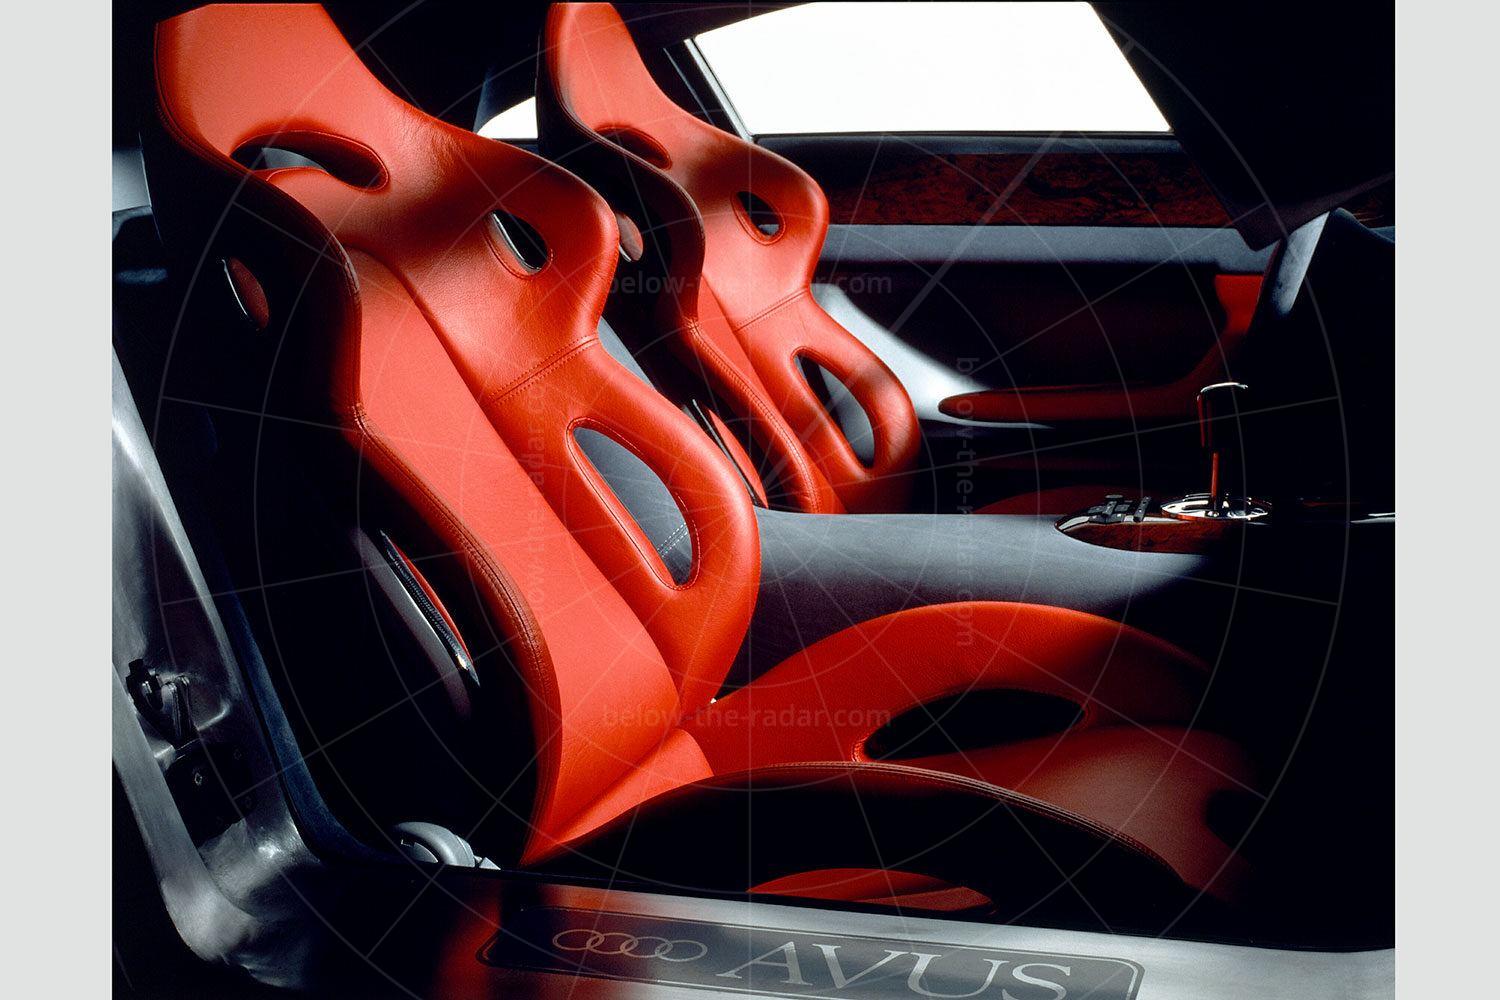 Audi Avus interior Pic: Audi | Audi Avus interior